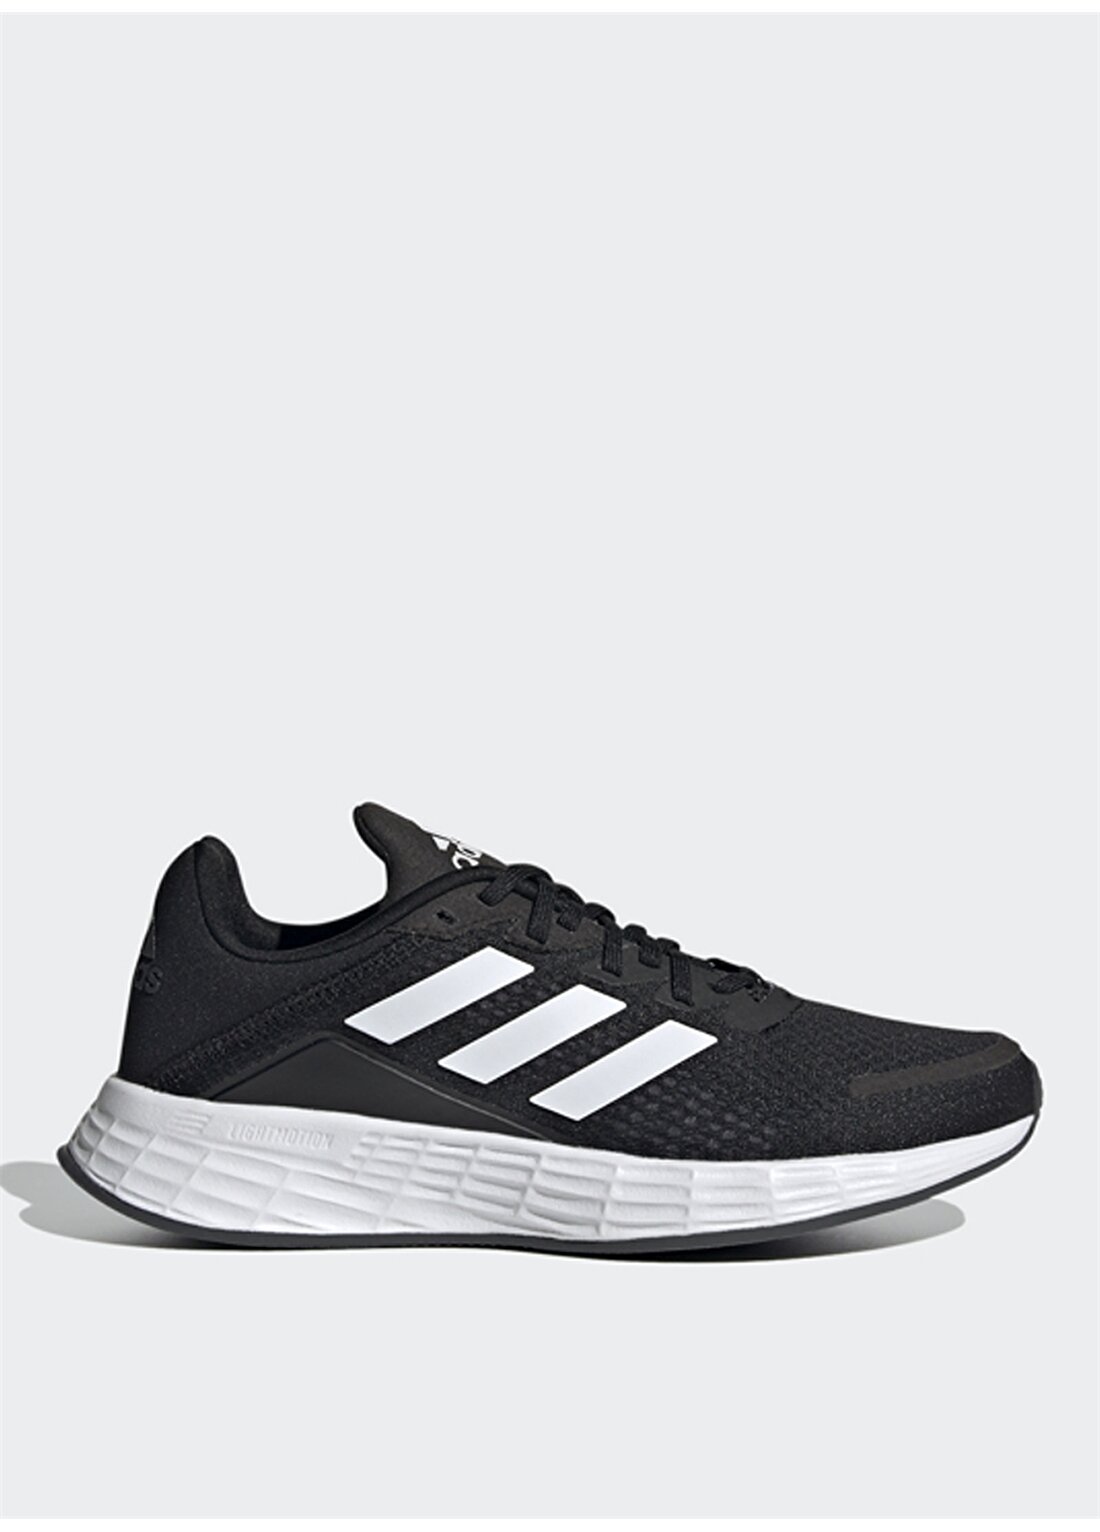 Adidas Duramo Sl K Siyah - Beyaz - Gri Erkek Çocuk Yürüyüş Ayakkabısı